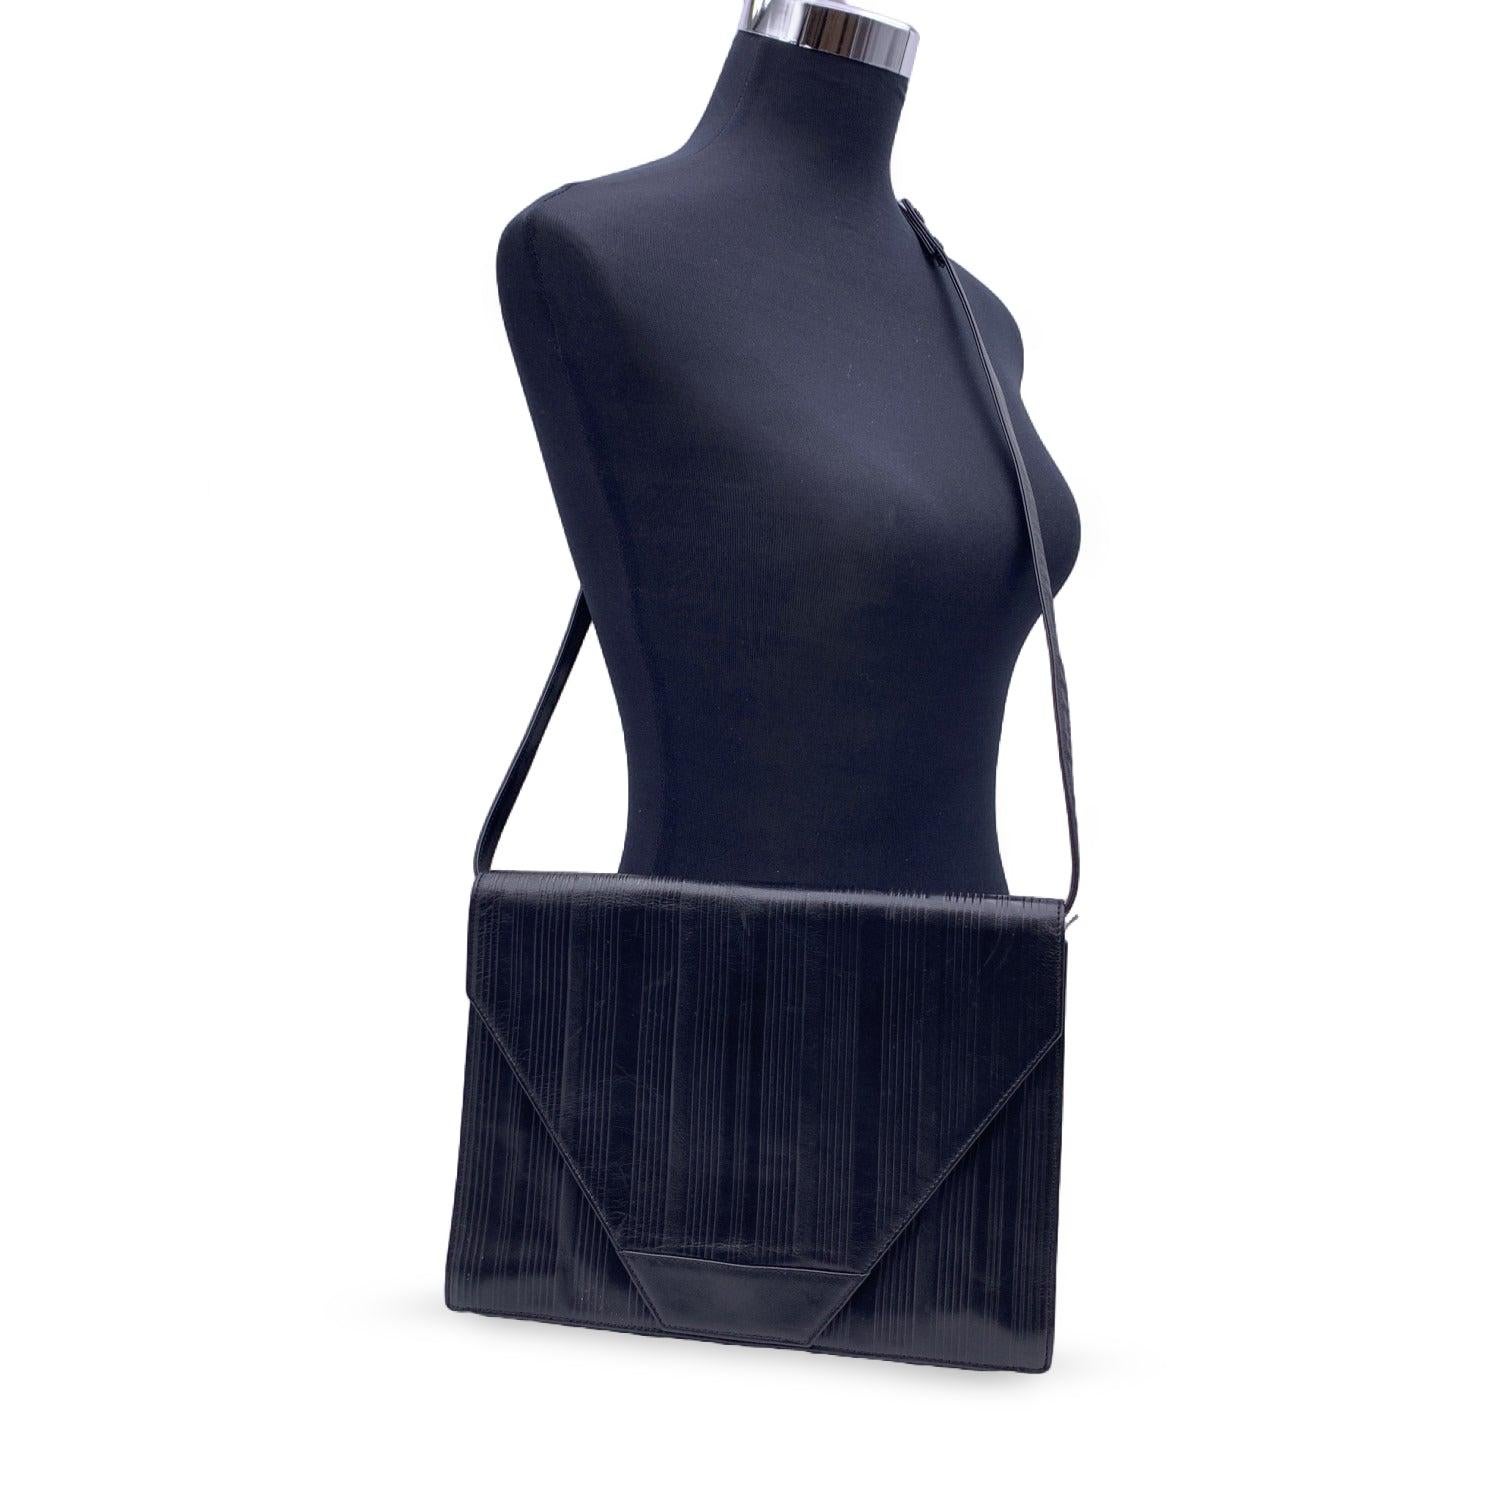 Gianni Versace Vintage Umhängetasche oder Clutch aus schwarzem, geripptem Leder. Sie hat eine Klappe mit Magnetknopfverschluss auf der Vorderseite. Abnehmbarer Schultergurt. Schwarzes Stofffutter. 1 Seitentasche mit Reißverschluss innen. GIANNI